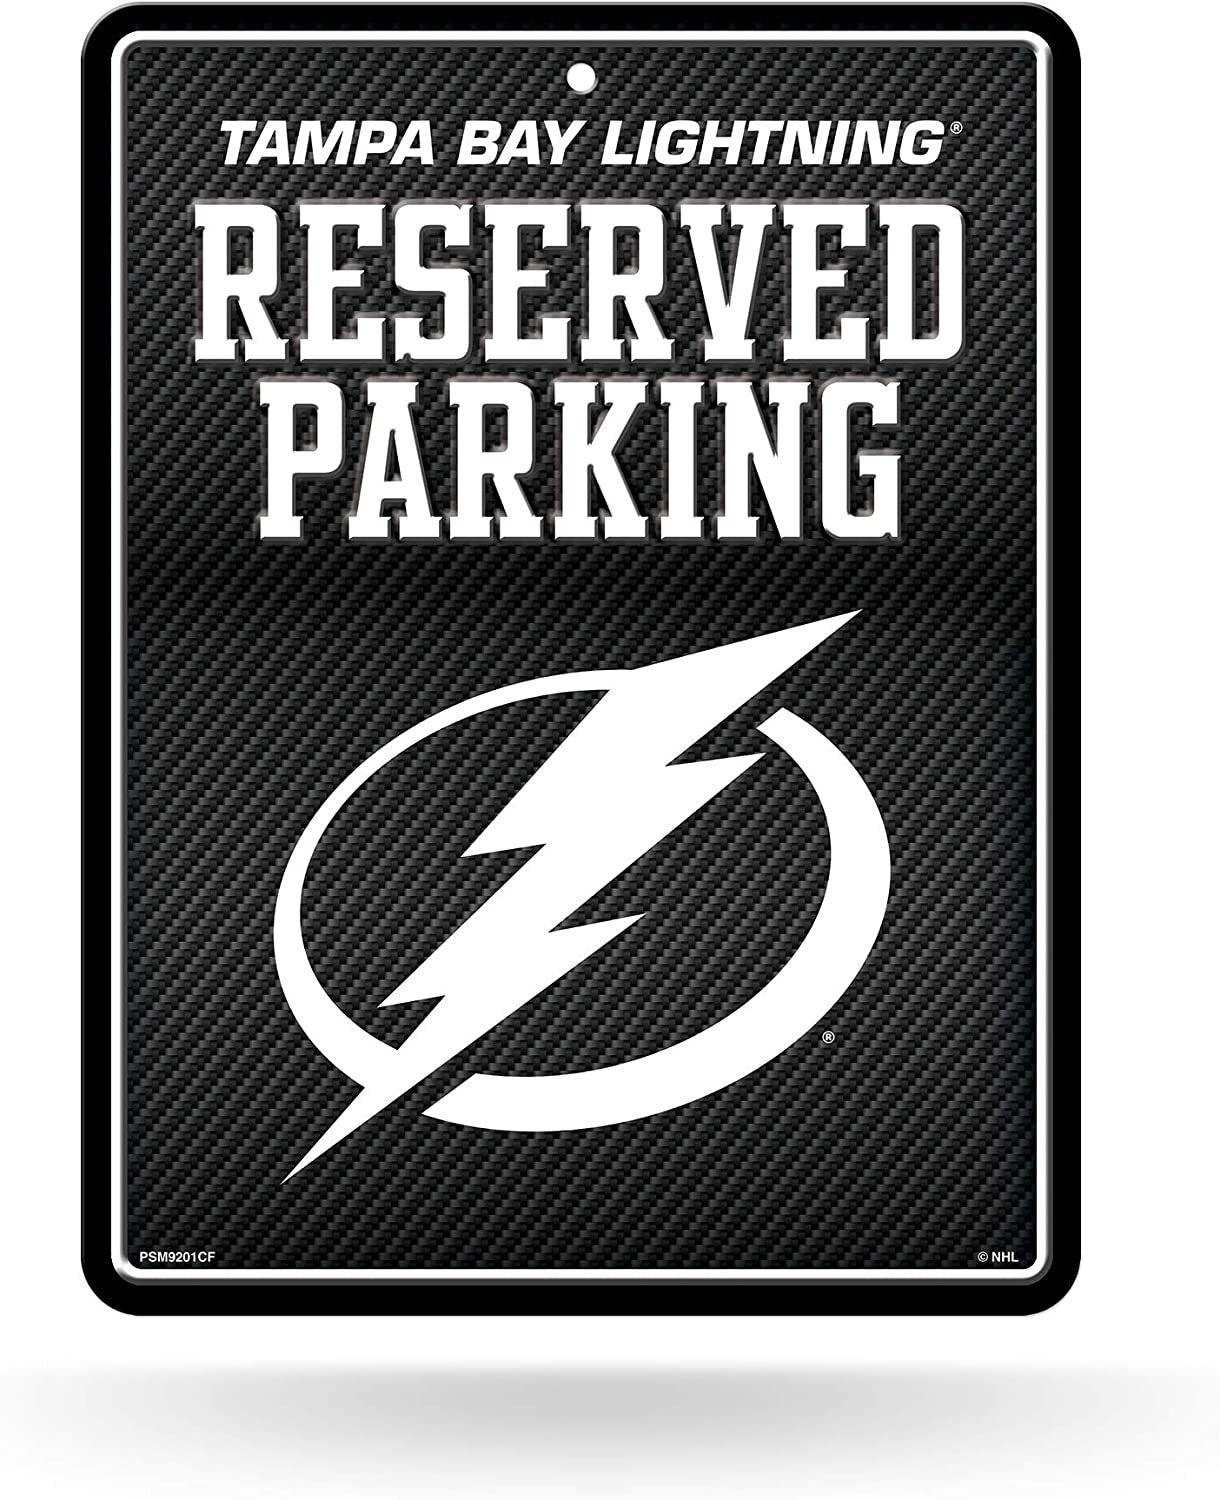 Tampa Bay Lightning Metal Parking Novelty Wall Sign 8.5 x 11 Inch Carbon Fiber Design